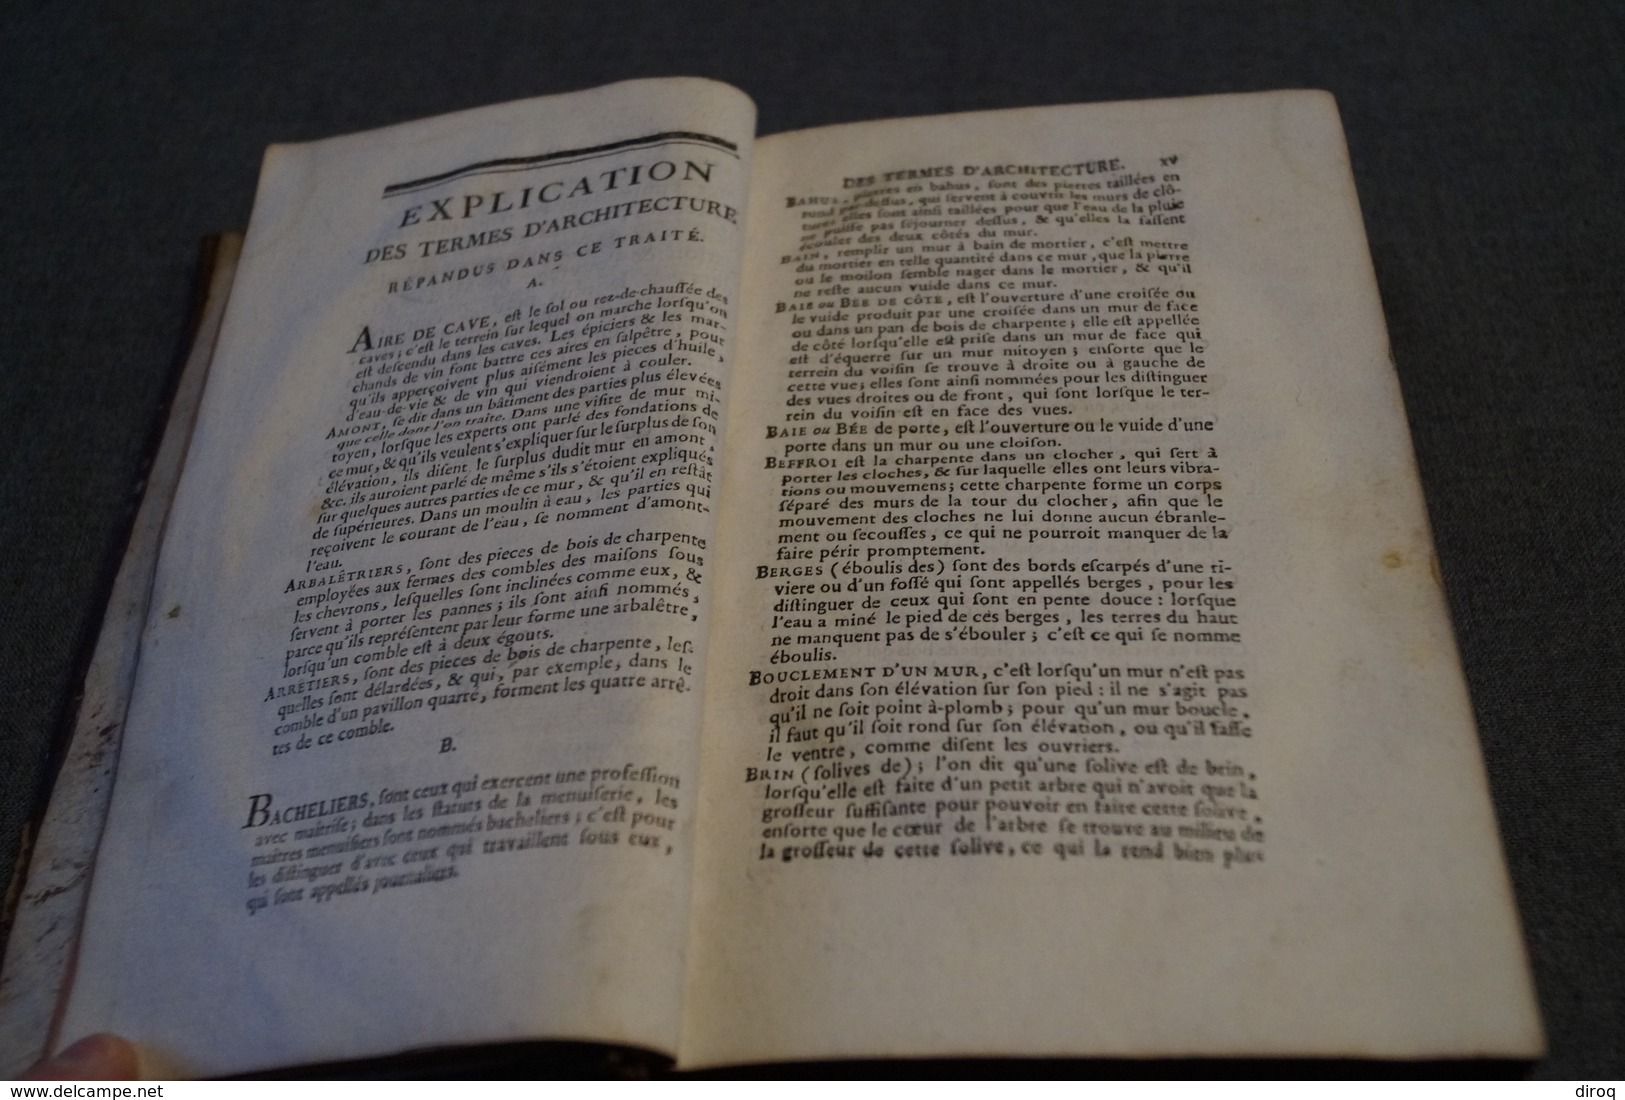 RARE,1787,Les loix des batiments suivant la coutume de Paris,700 pages,20,5 Cm. sur 13,5 Cm.